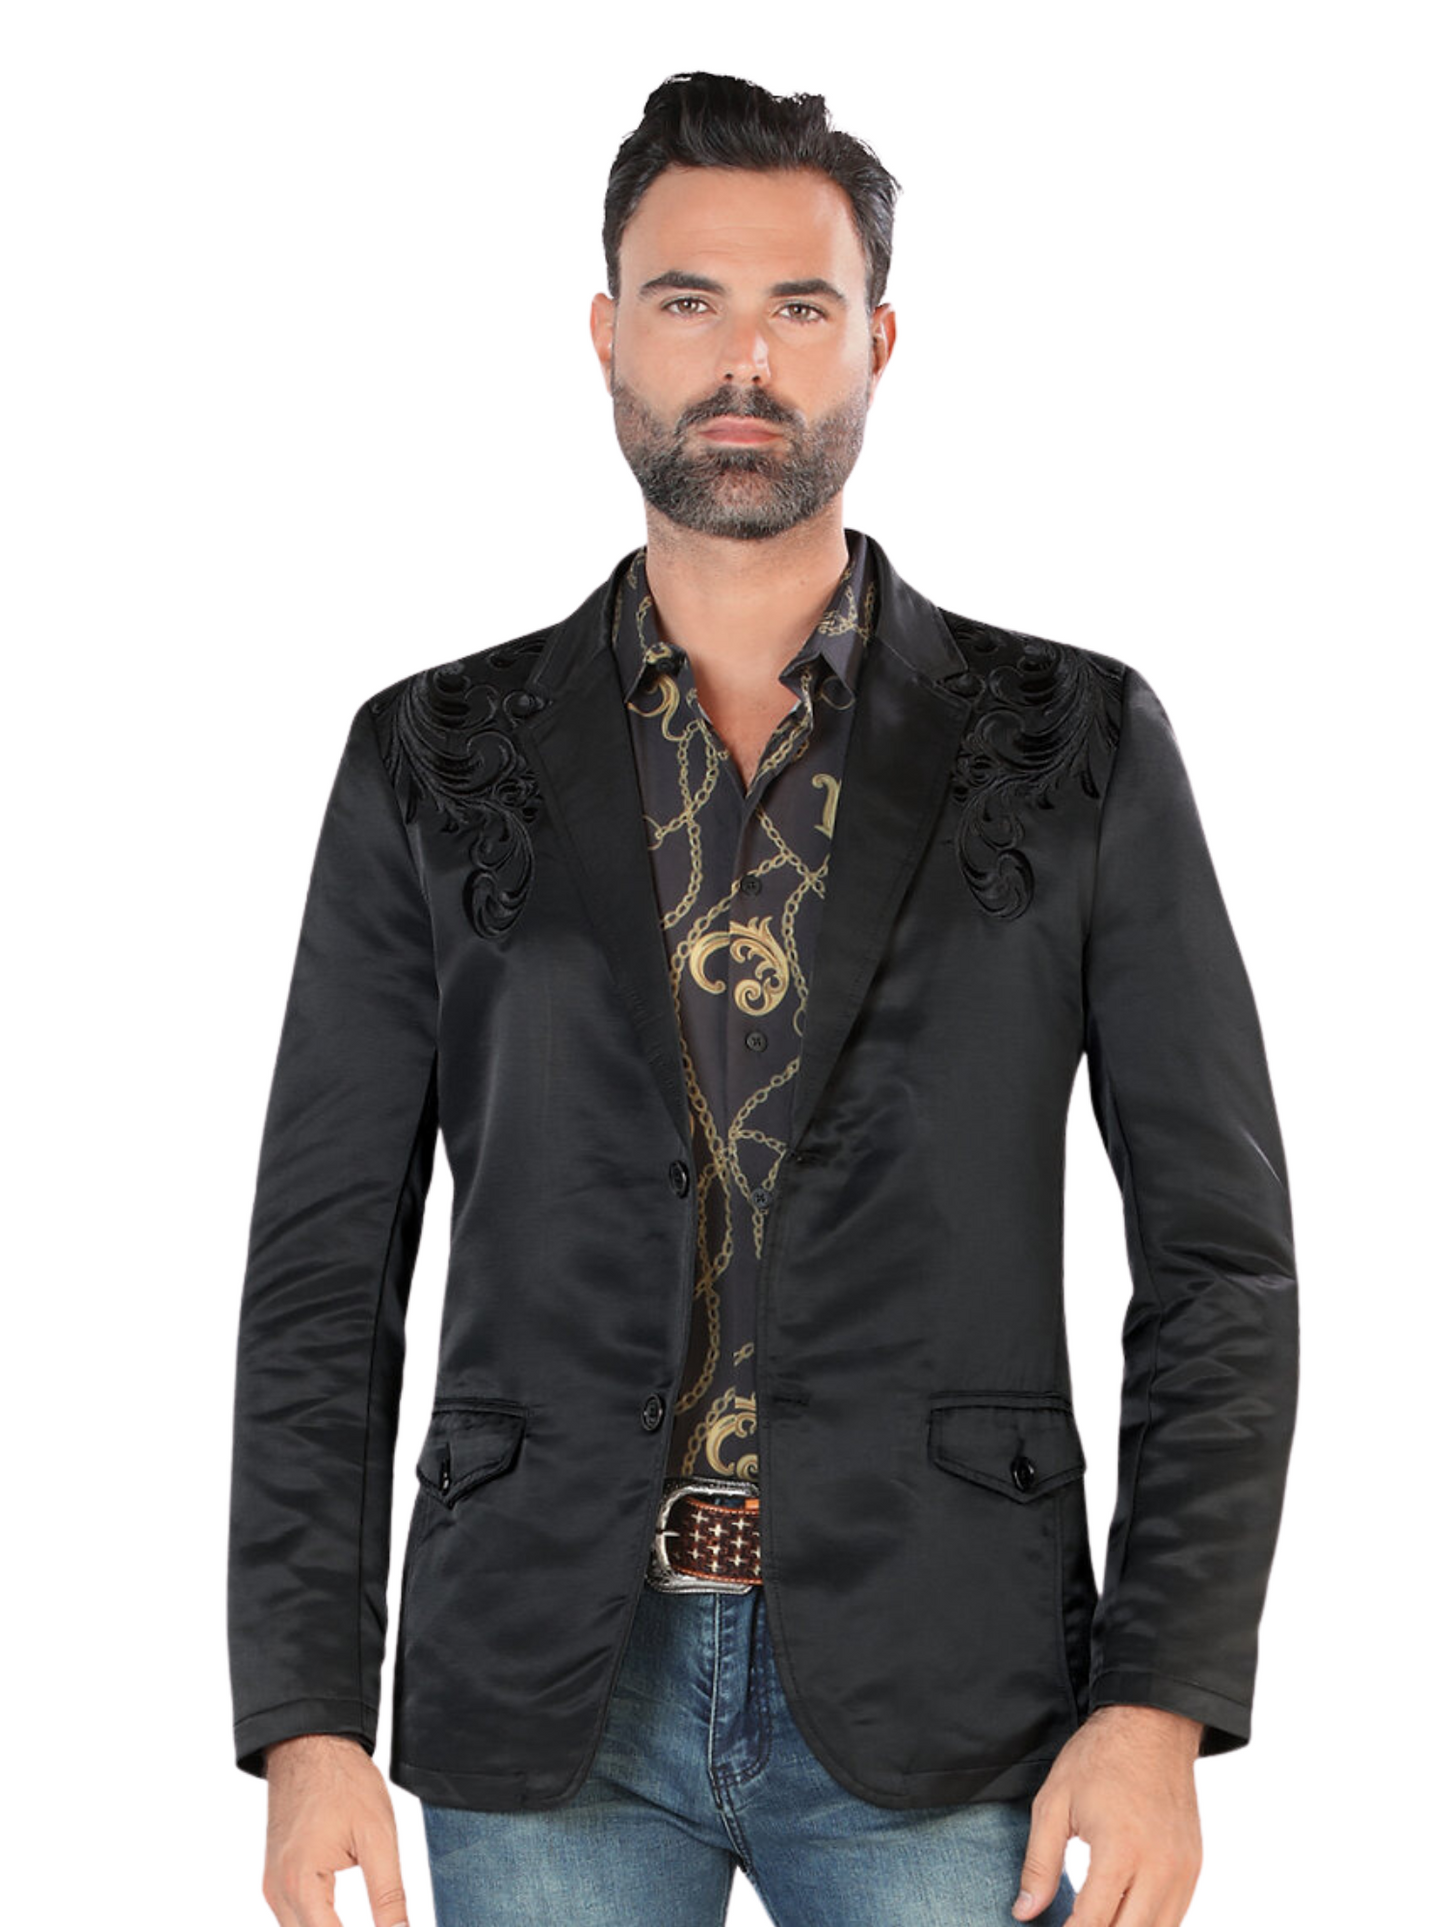 Embroidered Denim Jacket for Men 'Montero' - ID: 2173 Western Blazer Montero Black/Black